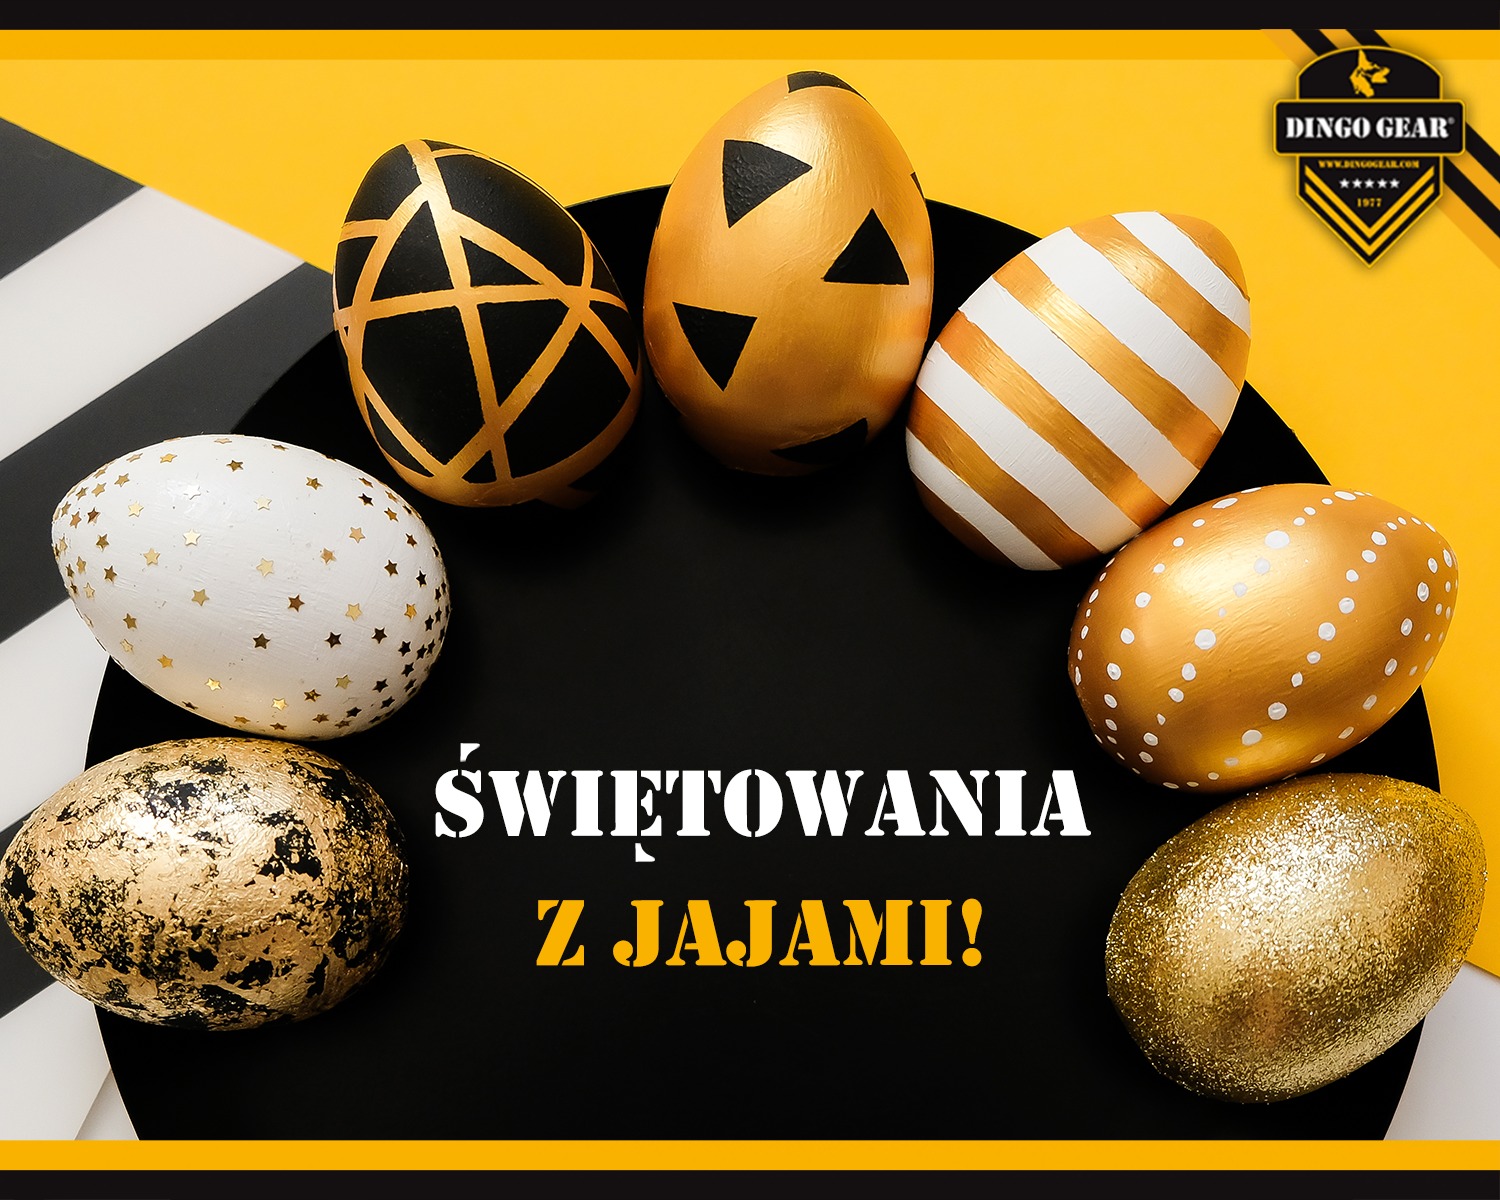 Świętuj Wielkanoc z jajami i nabieraj sił do kolejnych przedsięwzięć!